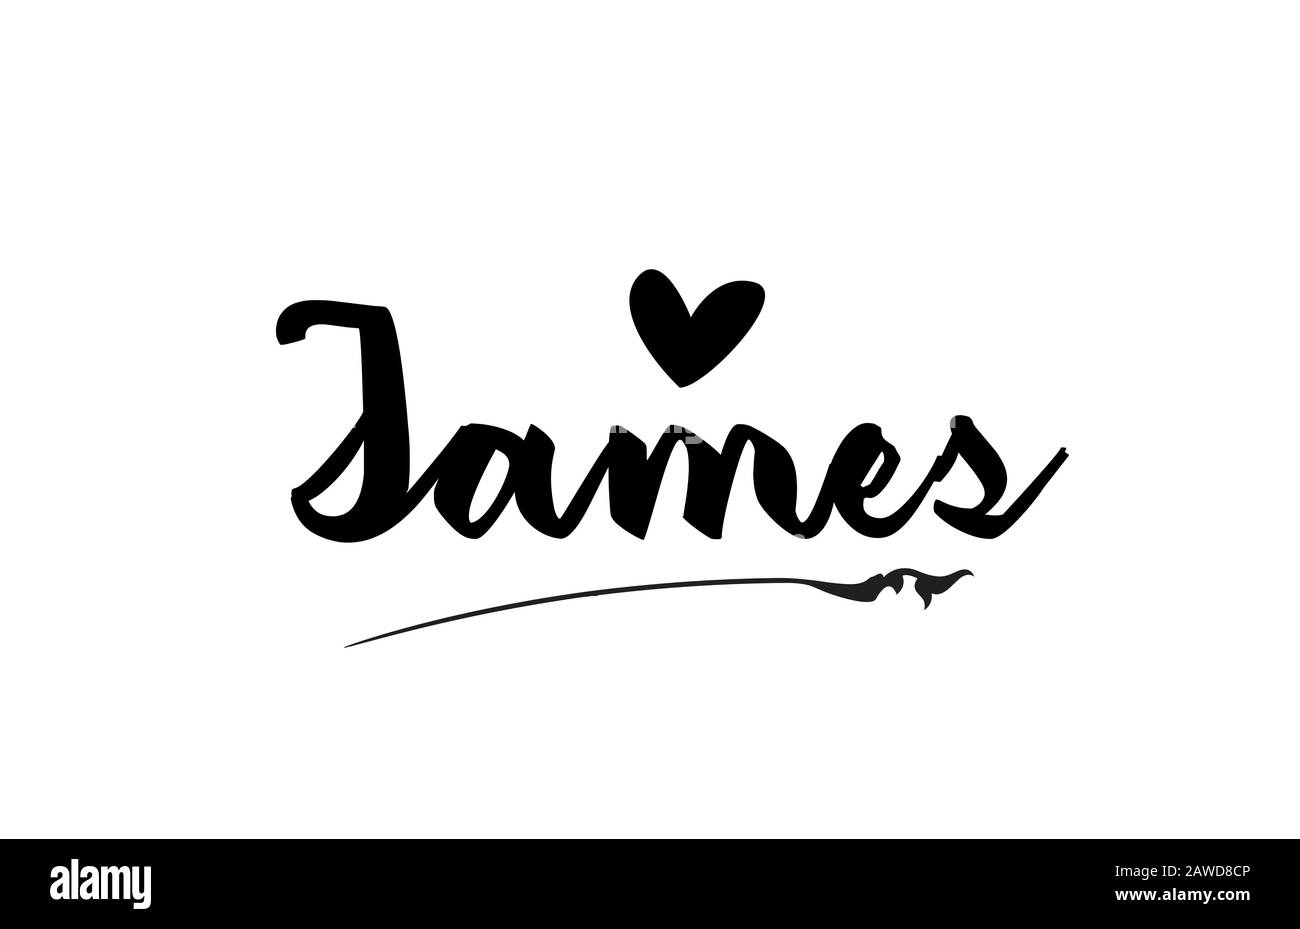 James nome testo parola con amore cuore mano scritta per logo tipografia modello di progettazione. Può essere utilizzato per un logotipo aziendale Illustrazione Vettoriale